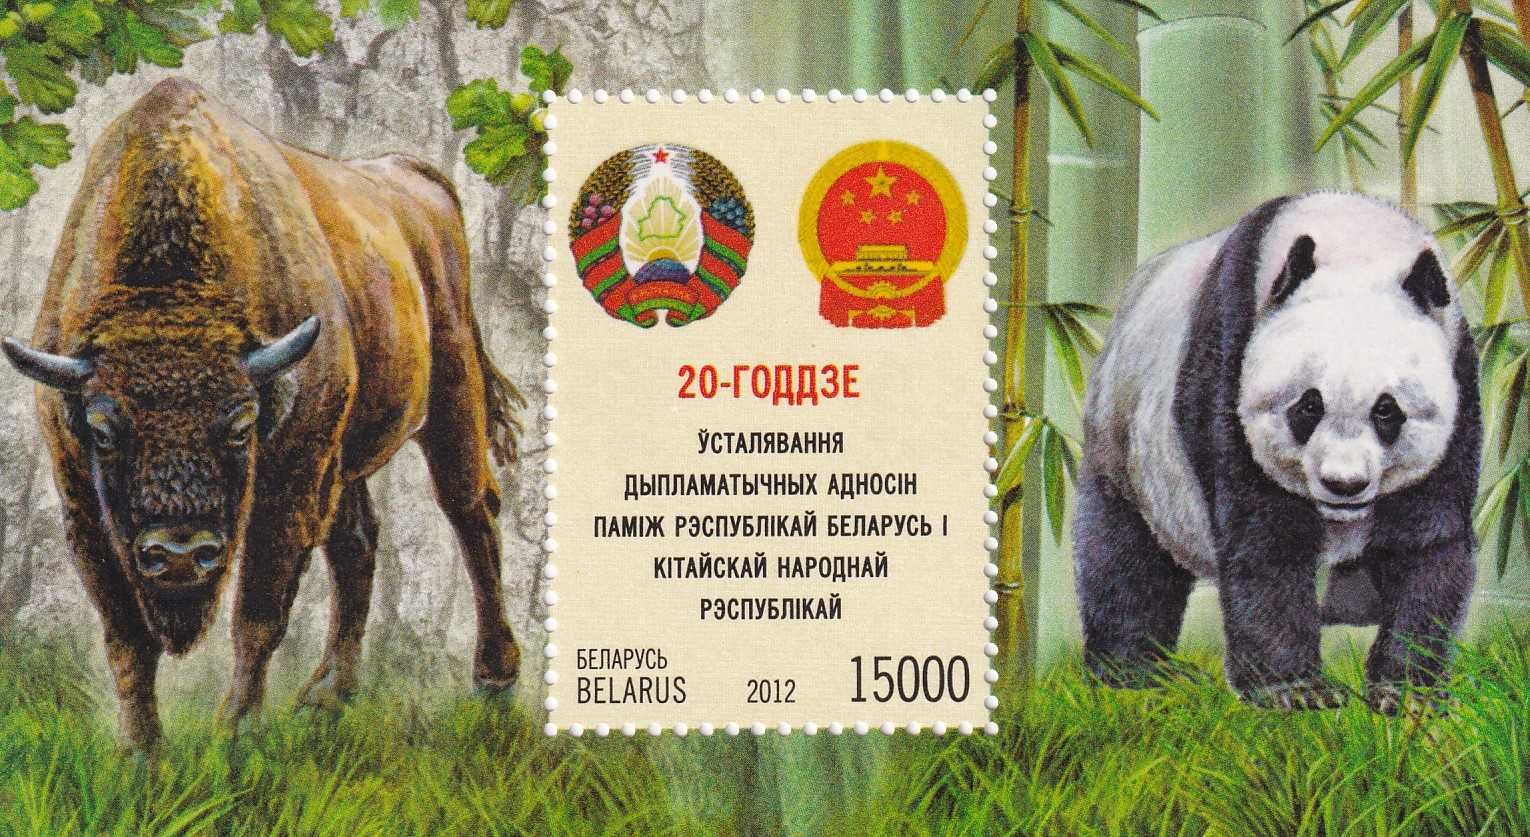 znaczki pocztowe - Białoruś 2012 cena 6,60 zł kat.10€ - fauna